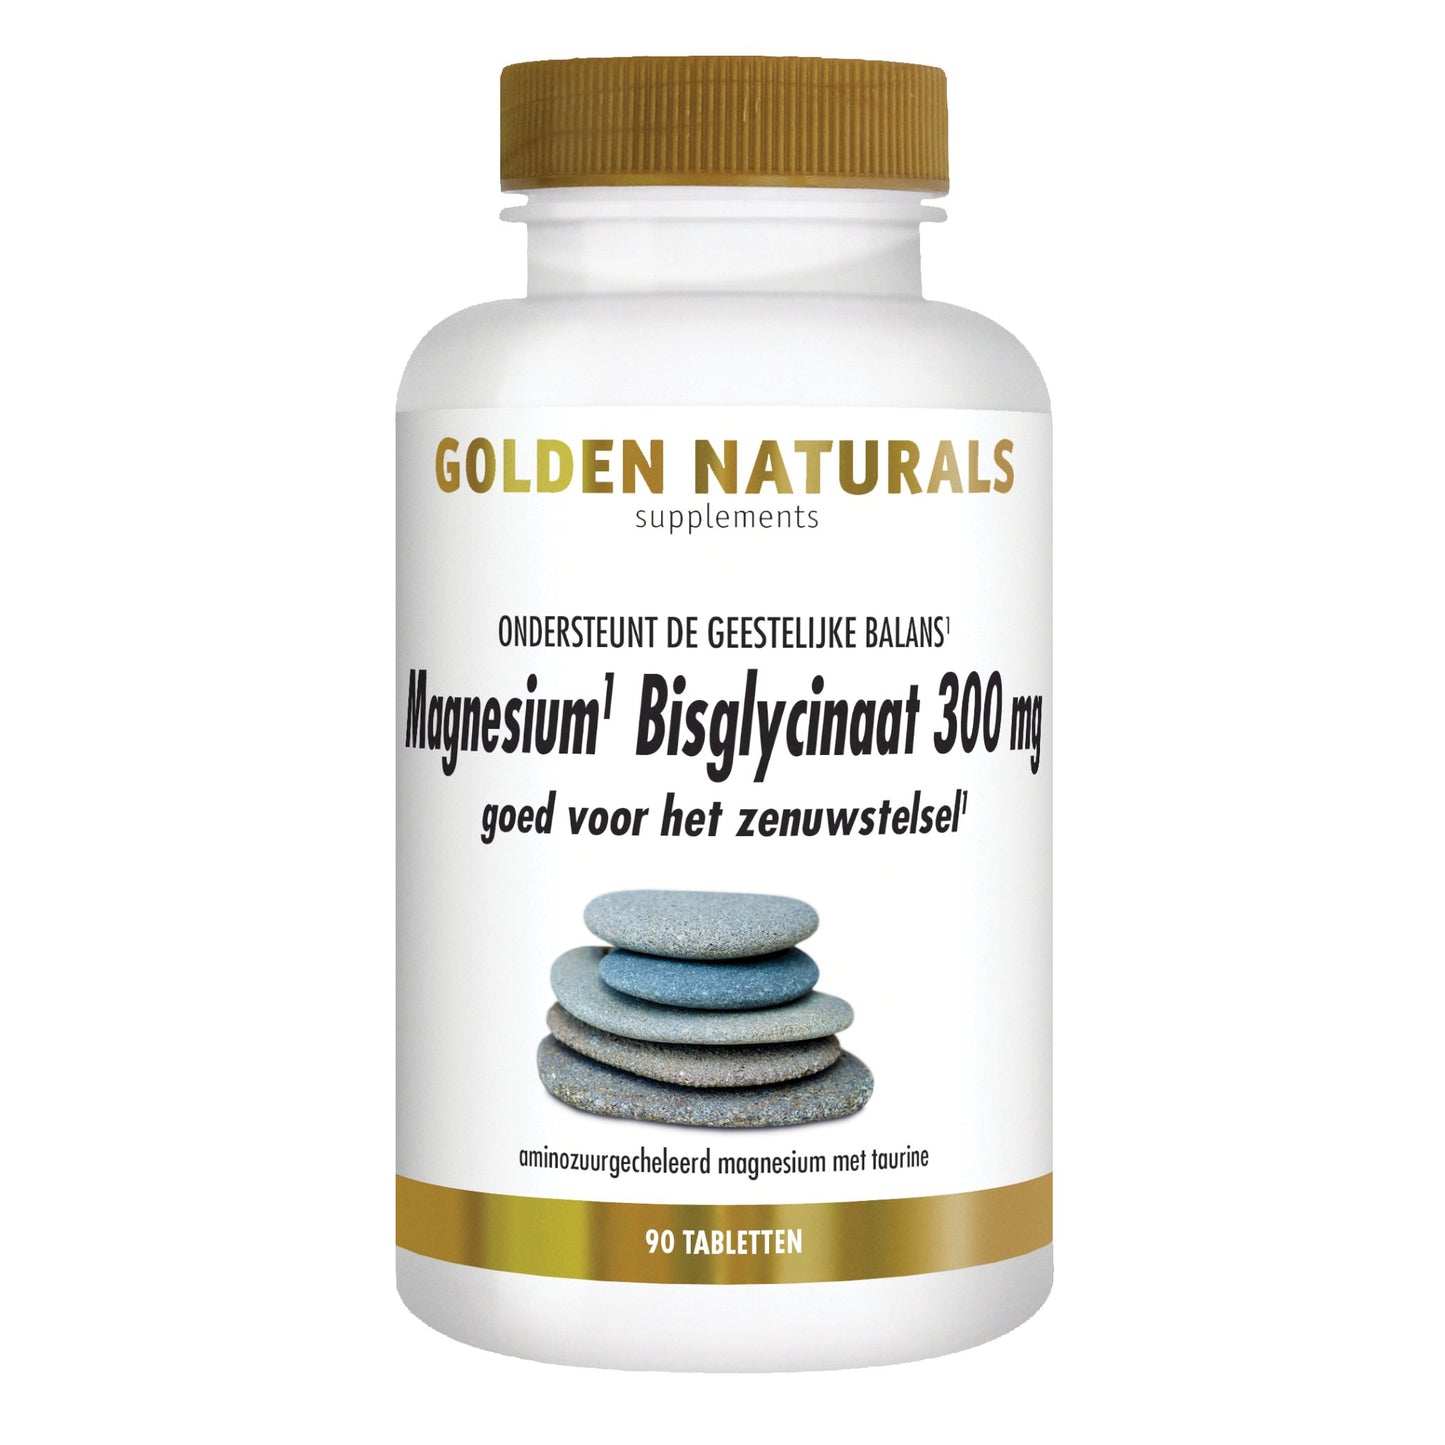 Magnesium Bisglycinaat 300 mg - 90 - veganistische tabletten Supplement Golden Naturals   